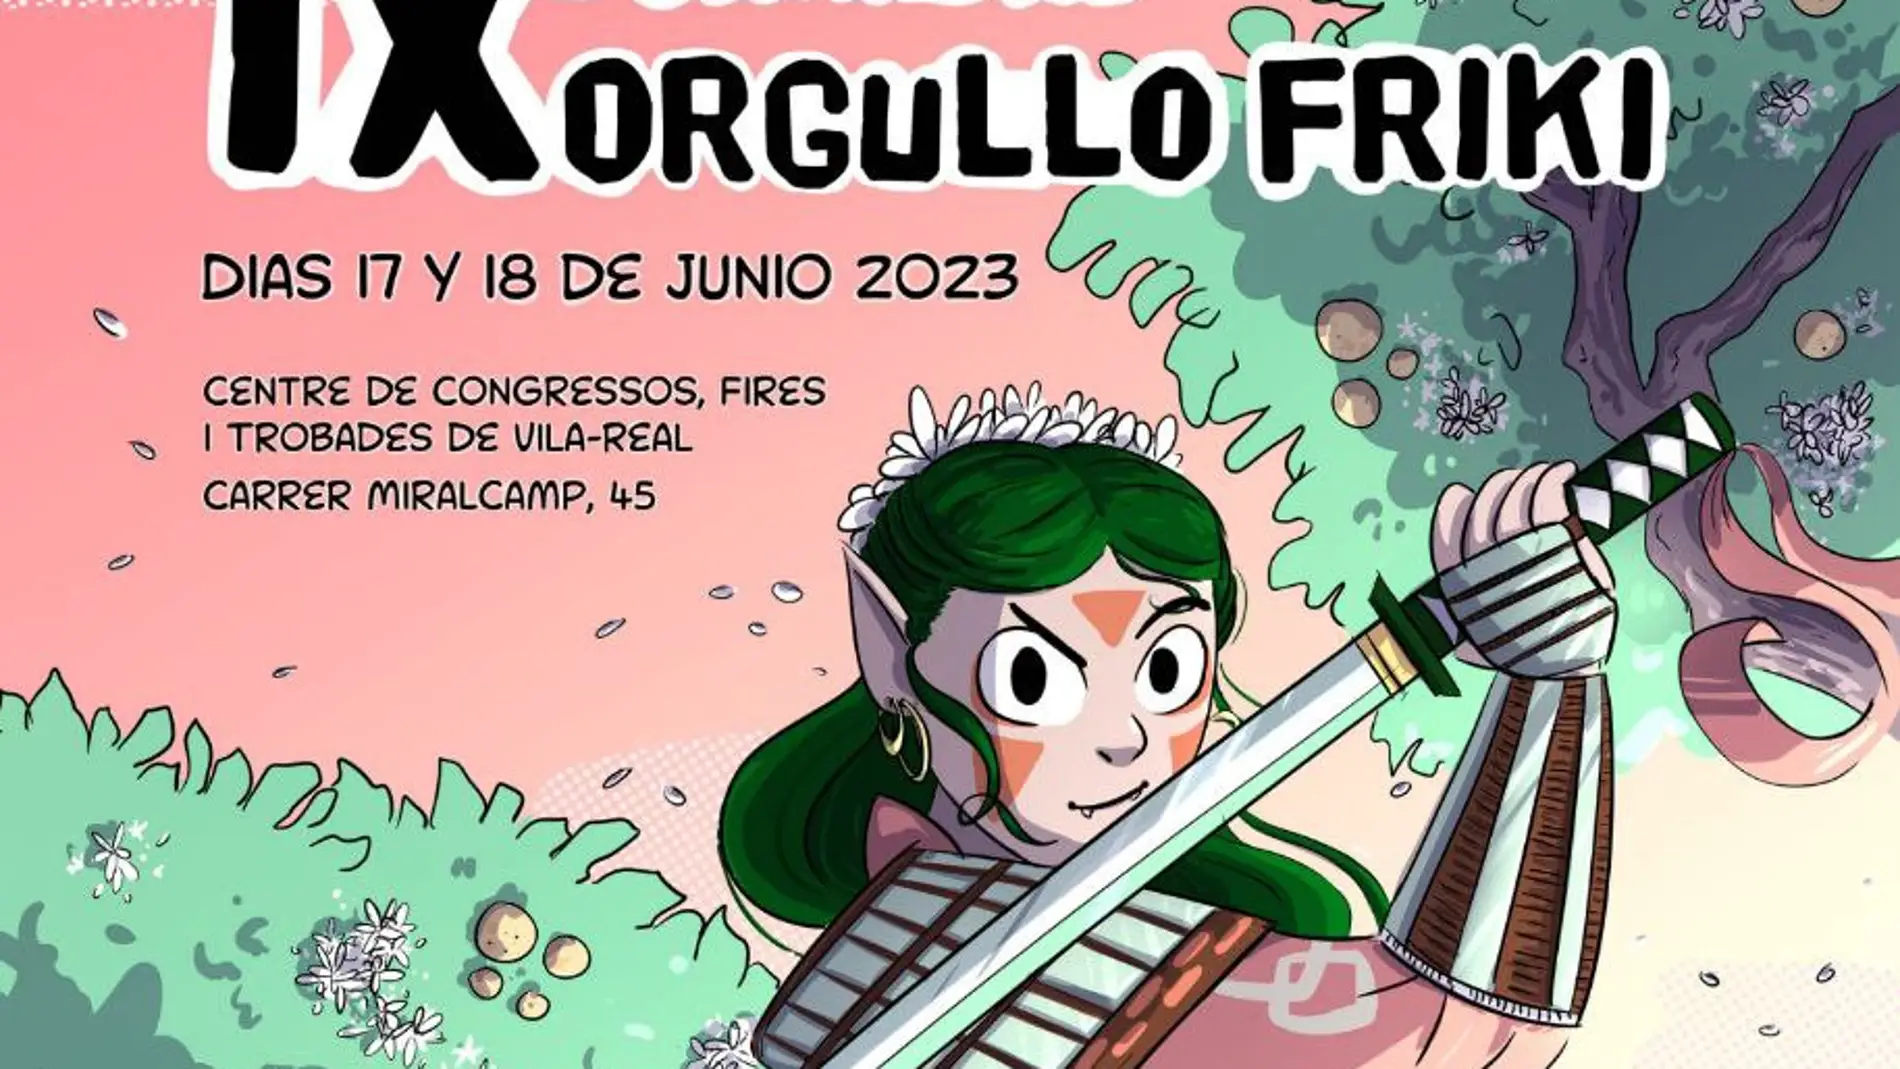 Vila-real reedita las Jornadas del Orgullo Friki con más de 50 actividades en el Centro de Congresos